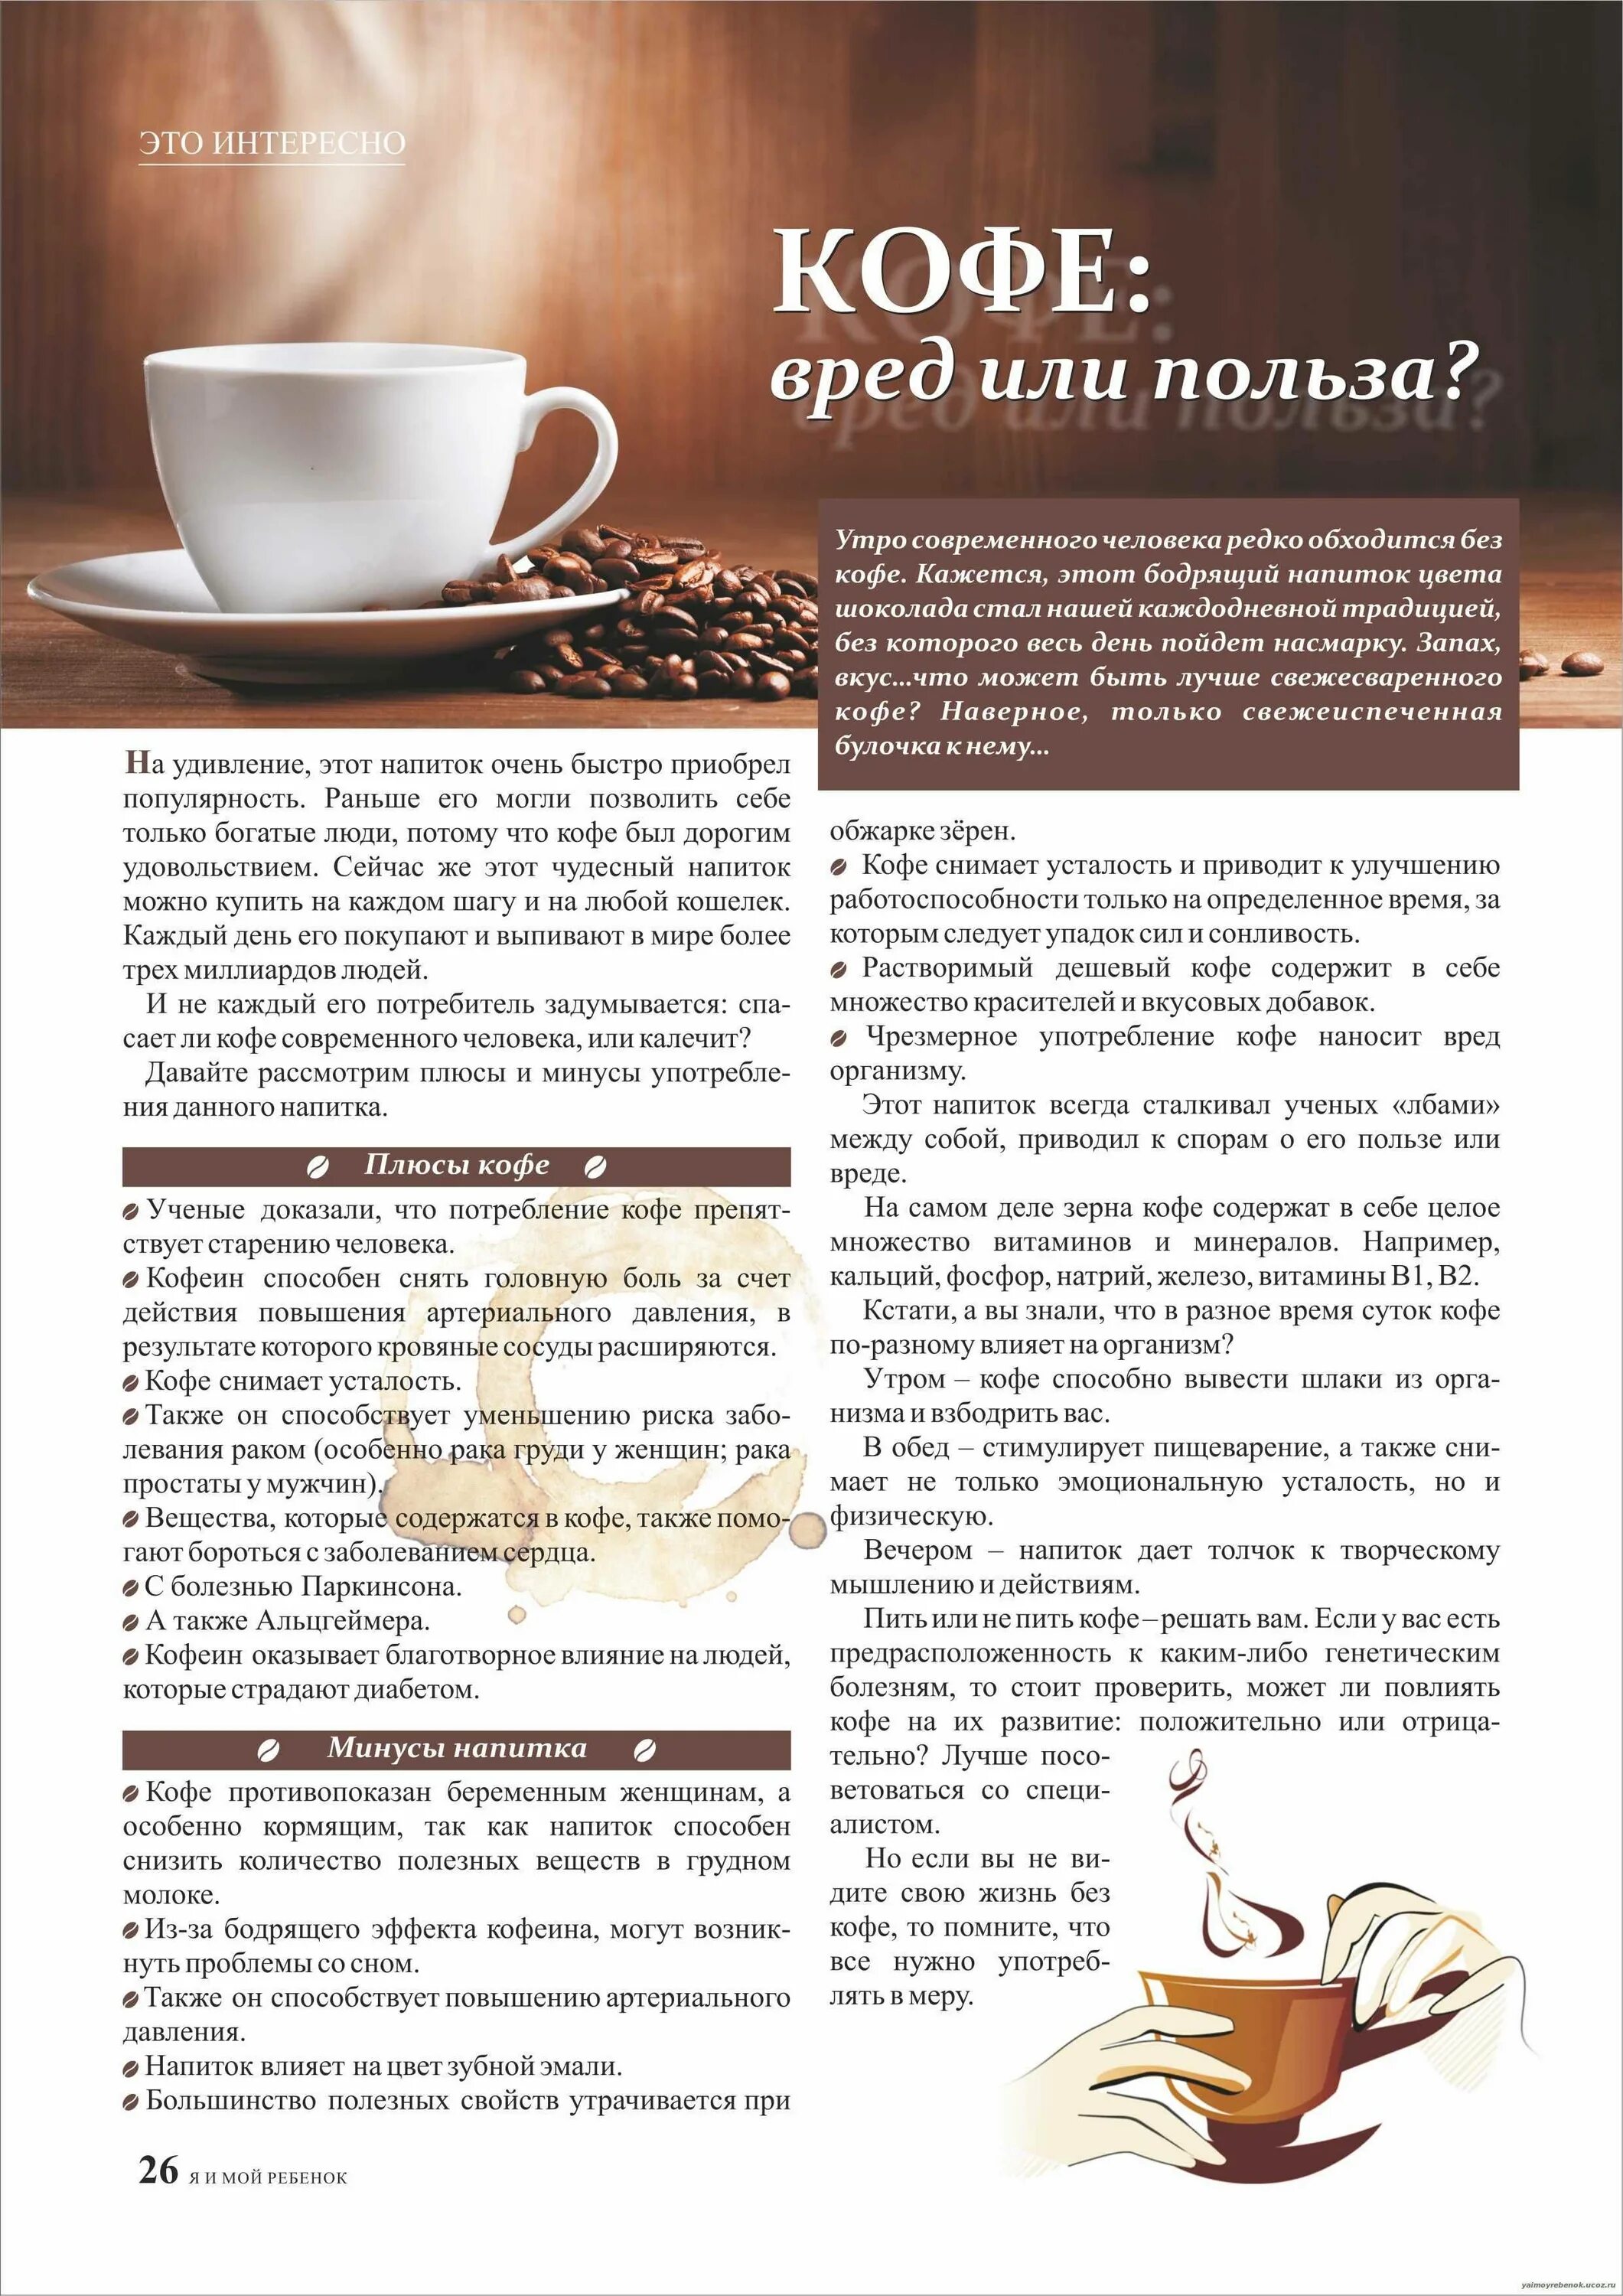 При низком давлении можно ли пить кофе. Кофе полезно для организма. Польза кофе. Кофе полезно или вредно. Польза и вред кофе.